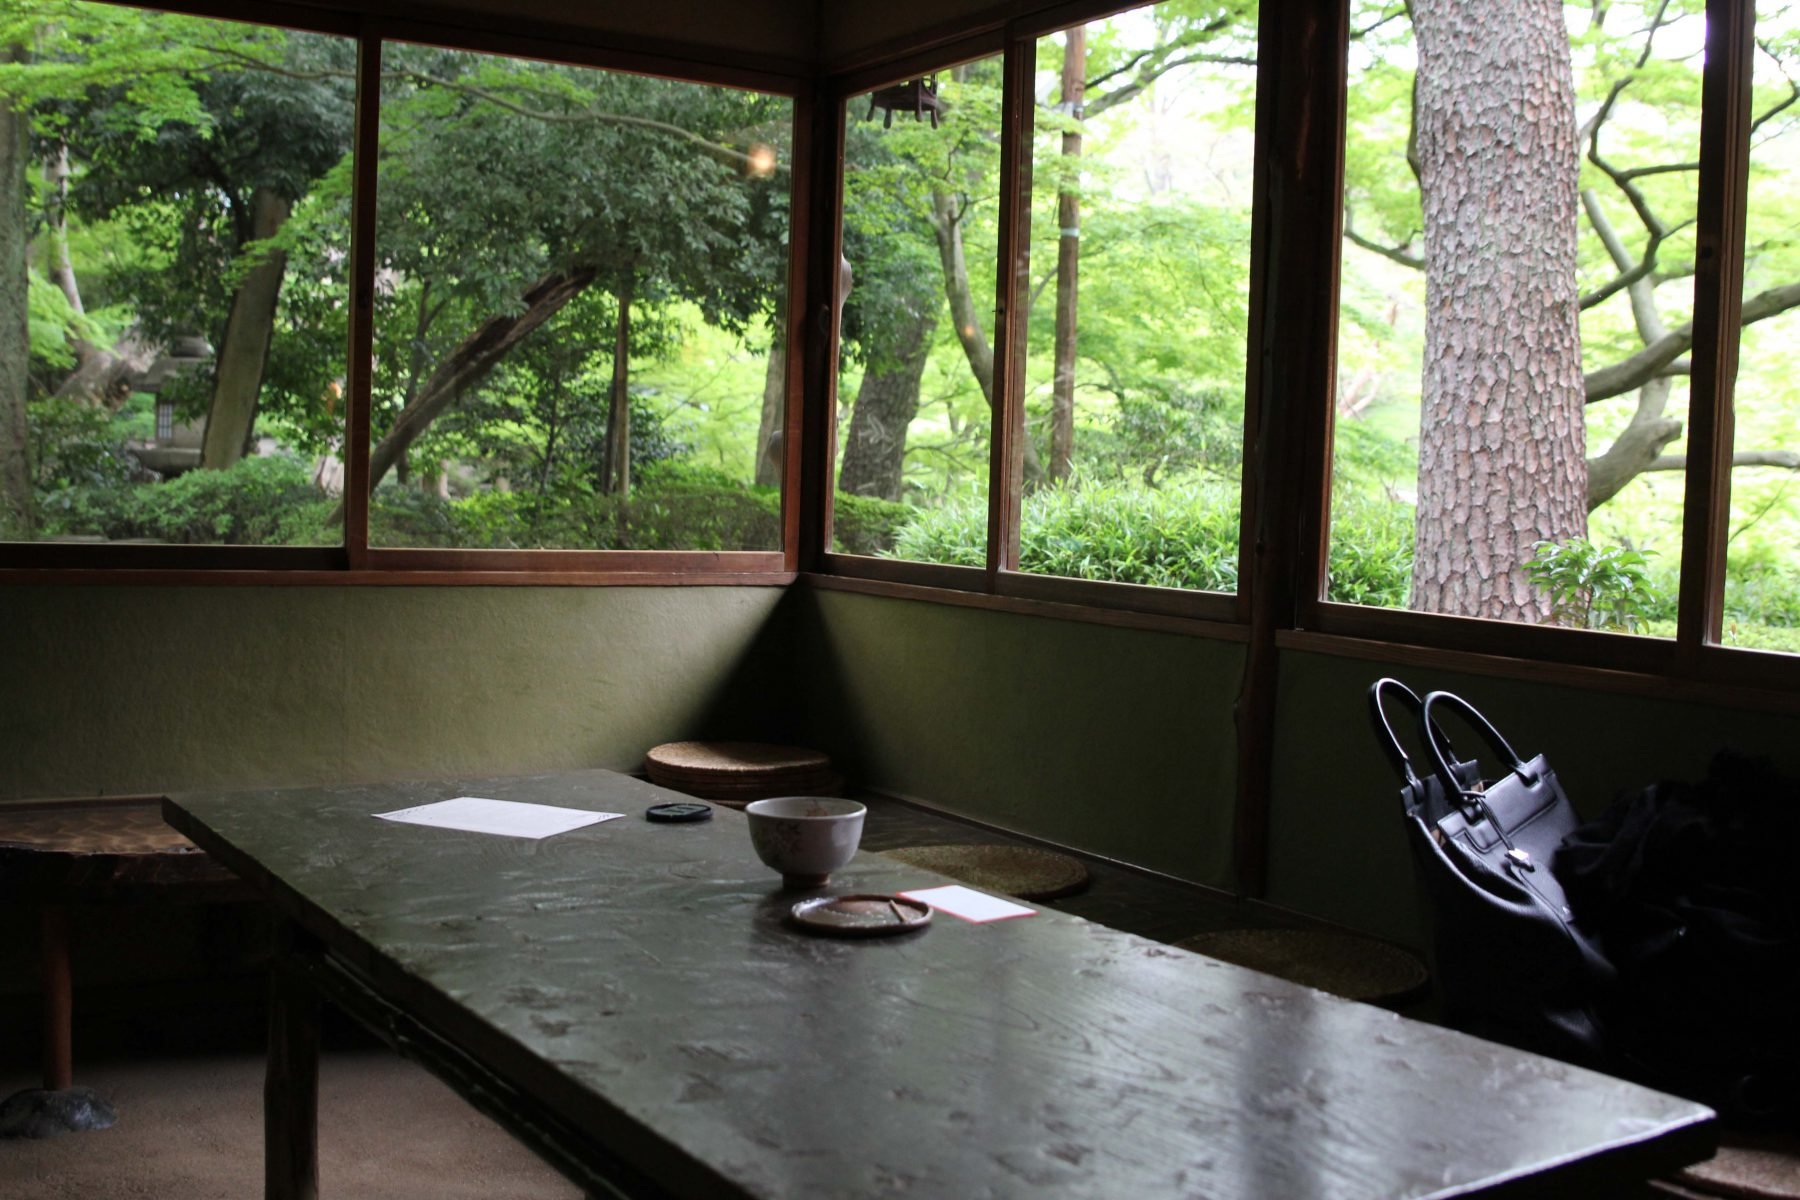 Tea ceremony at Happo-en gardens